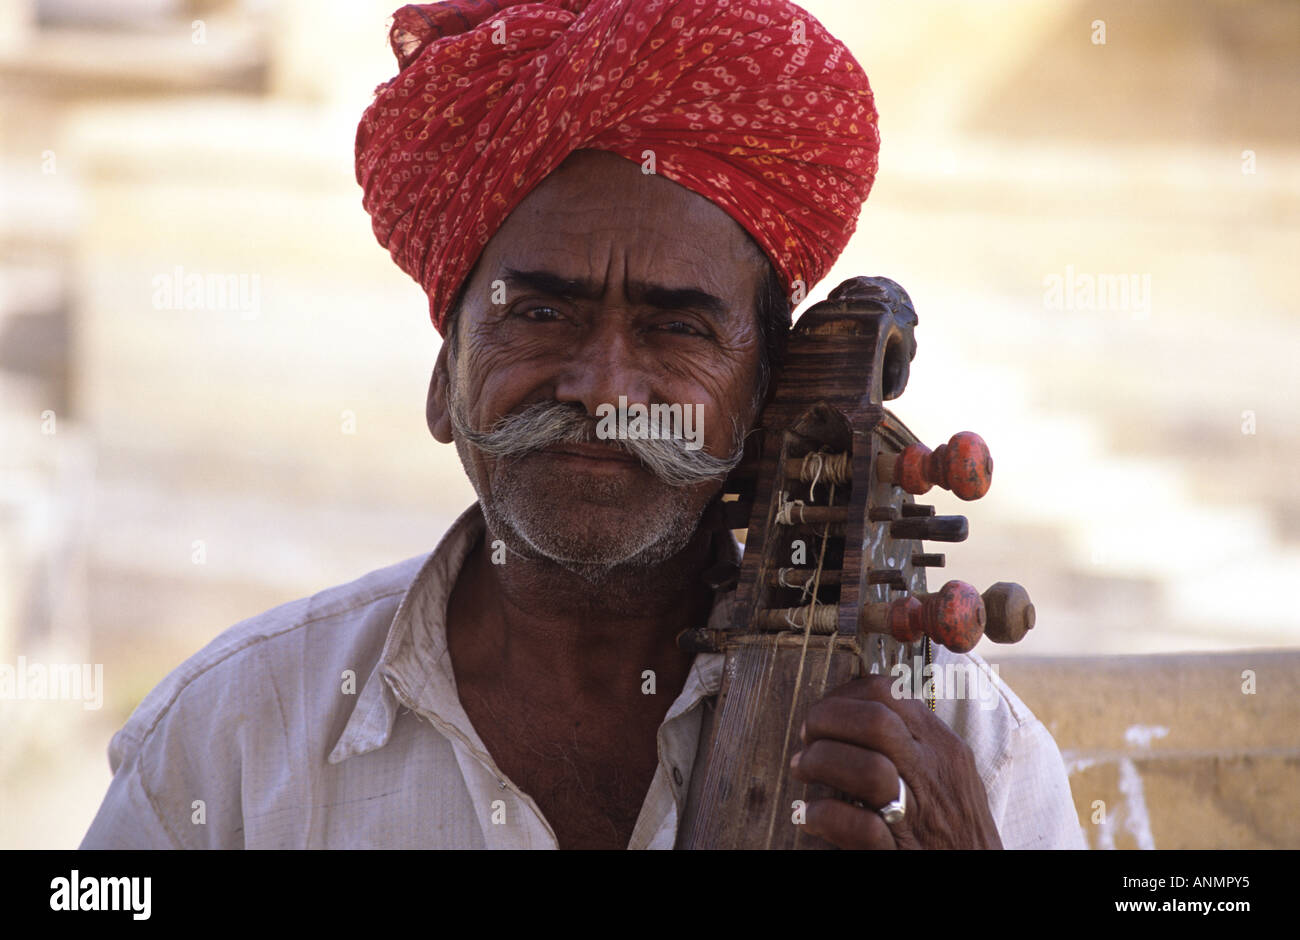 Musicien de rue indienne Banque D'Images